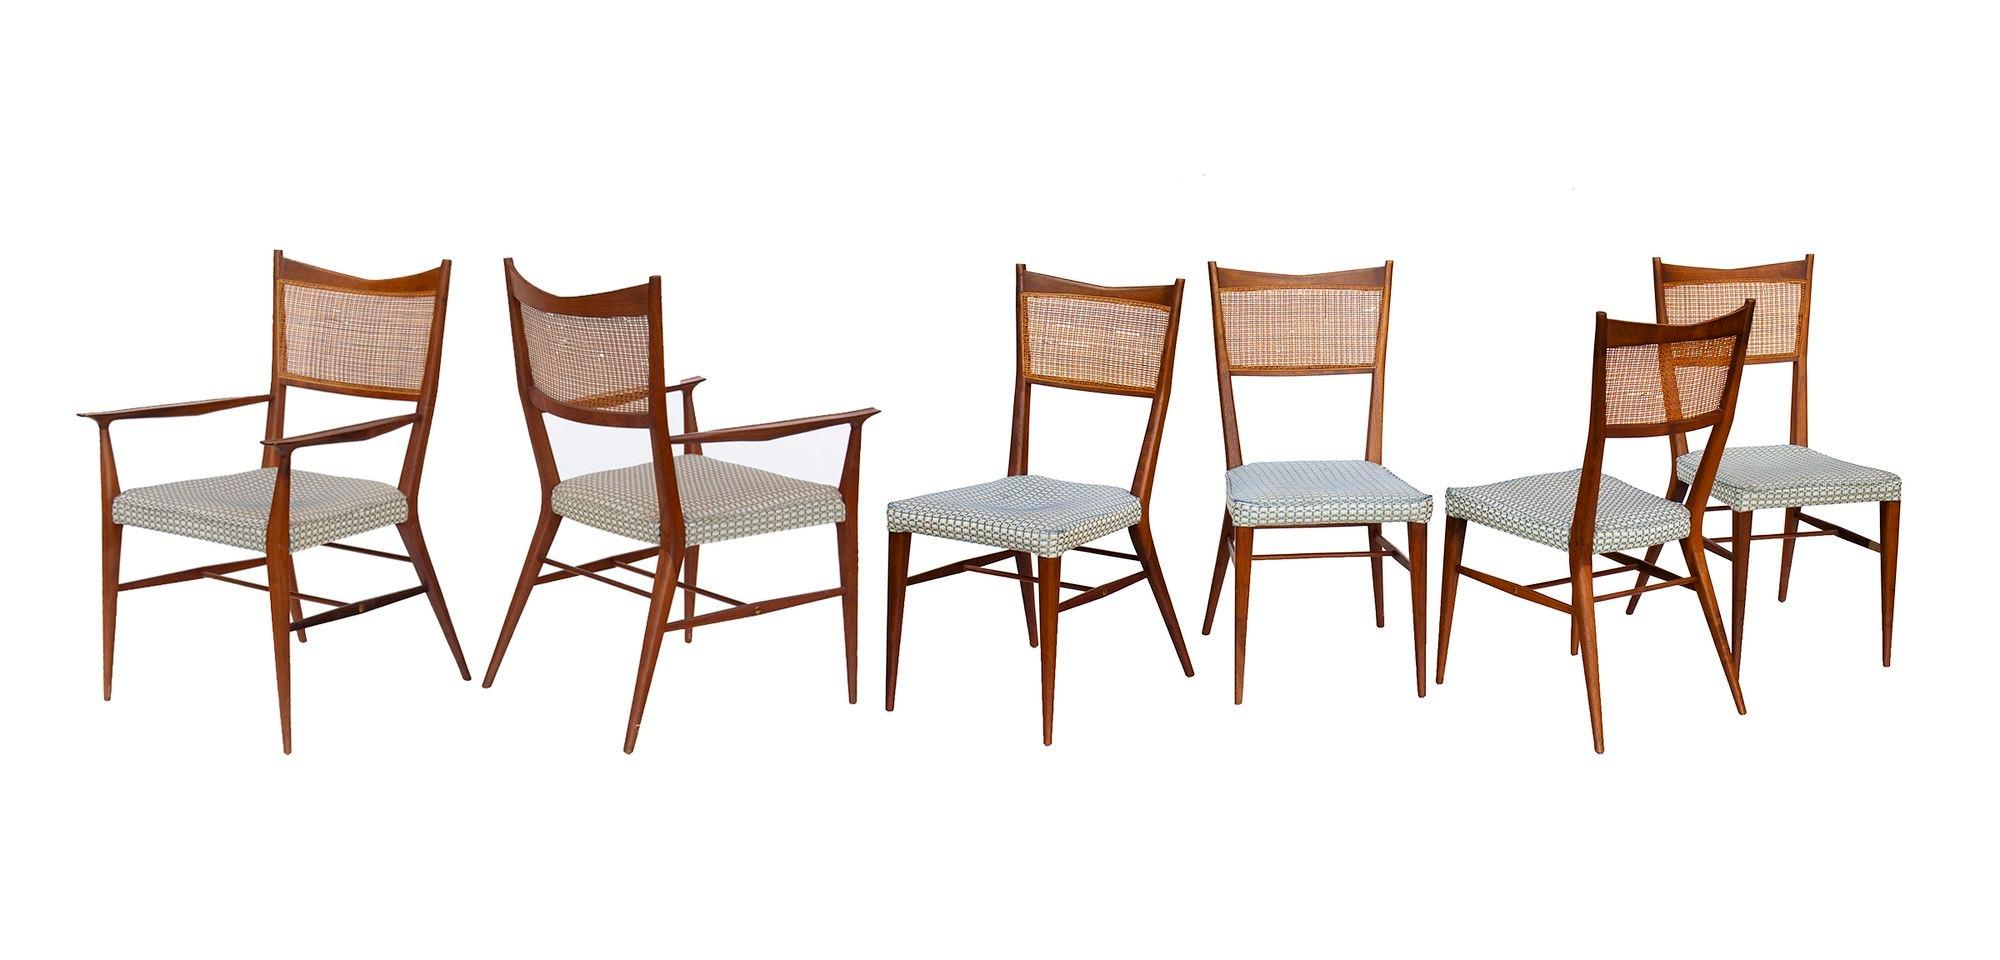 États-Unis, années 1950
Ensemble de chaises de salle à manger en noyer avec dossier canné, Paul McCobb for Calvin. L'ensemble comprend deux fauteuils et quatre chaises d'appoint, tous avec leurs sièges en tissu d'origine dans un tweed bleu